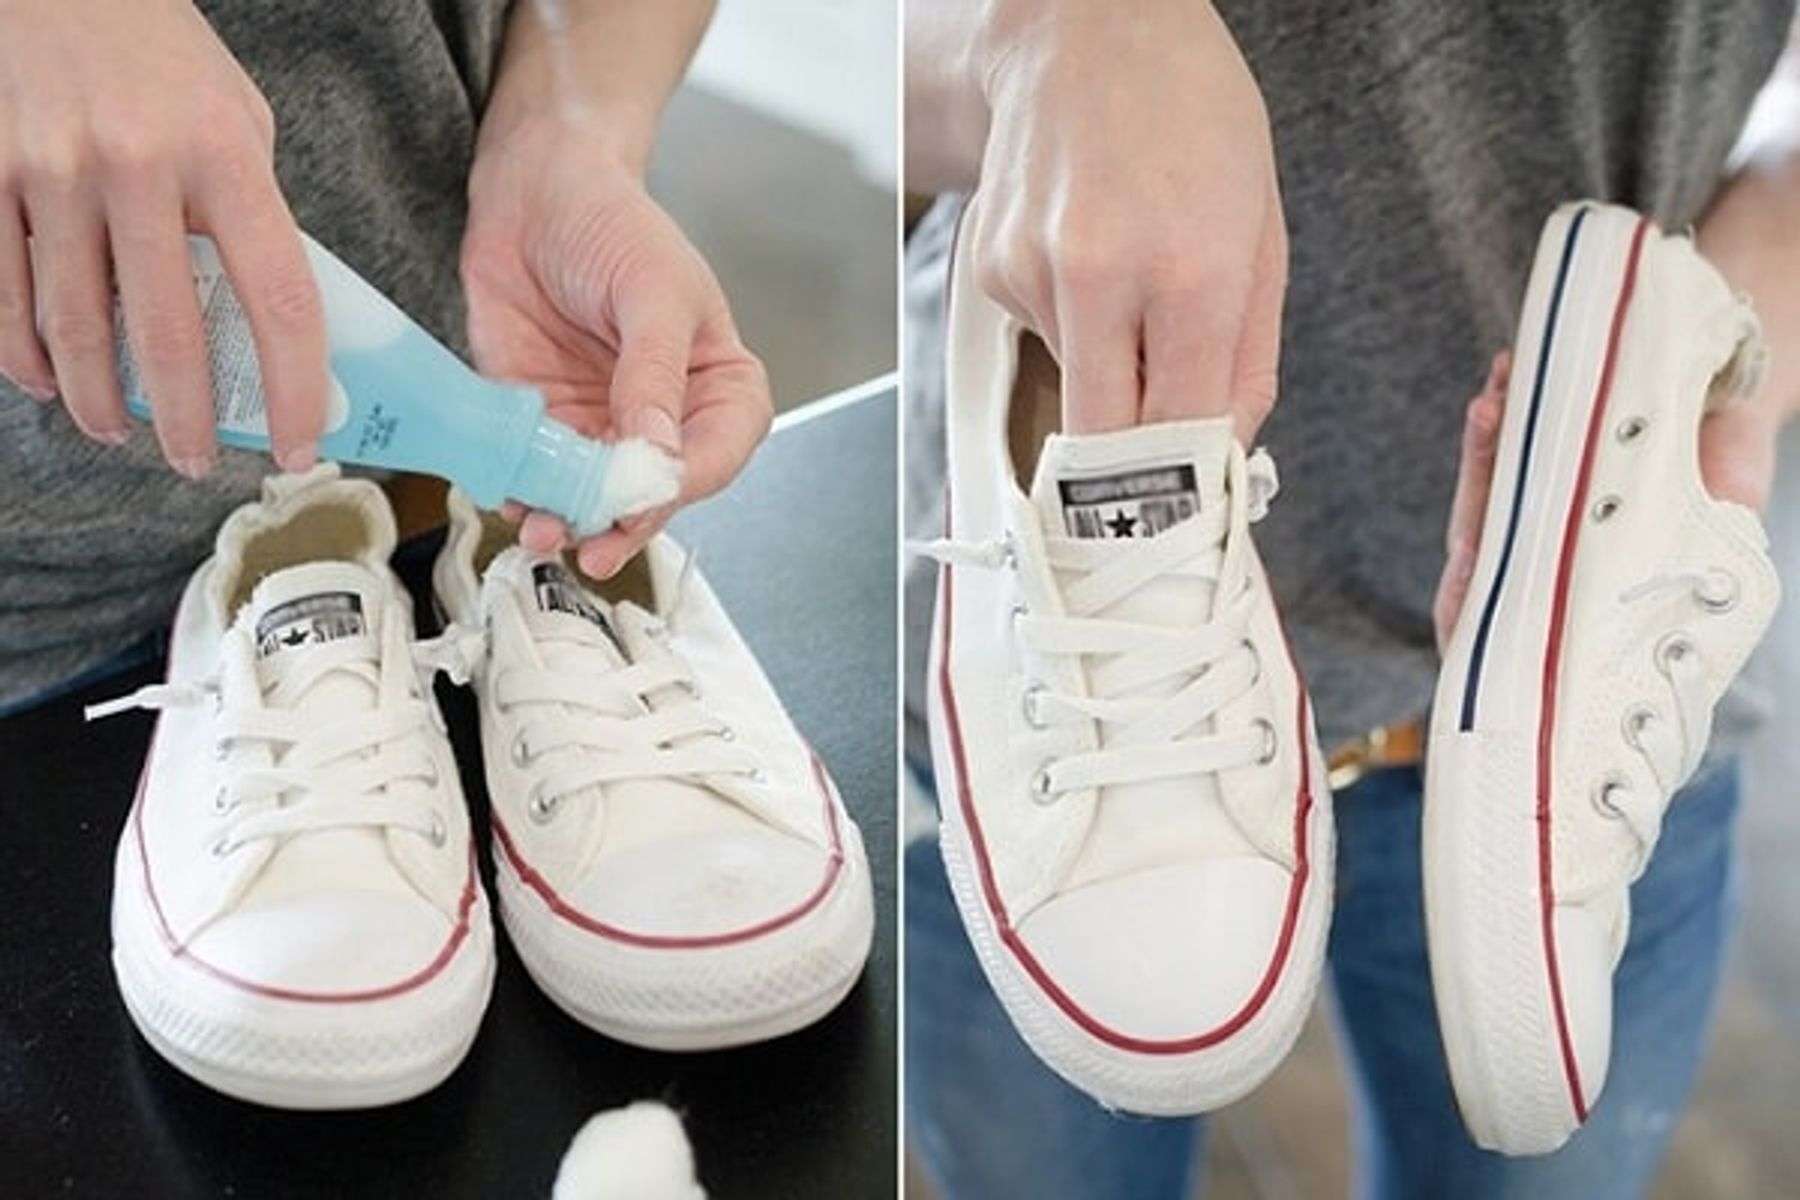 Xịt dung dịch nước giặt giày chuyên dụng lên giày và dùng bàn chải loại mềm chà sạch những vết bẩn